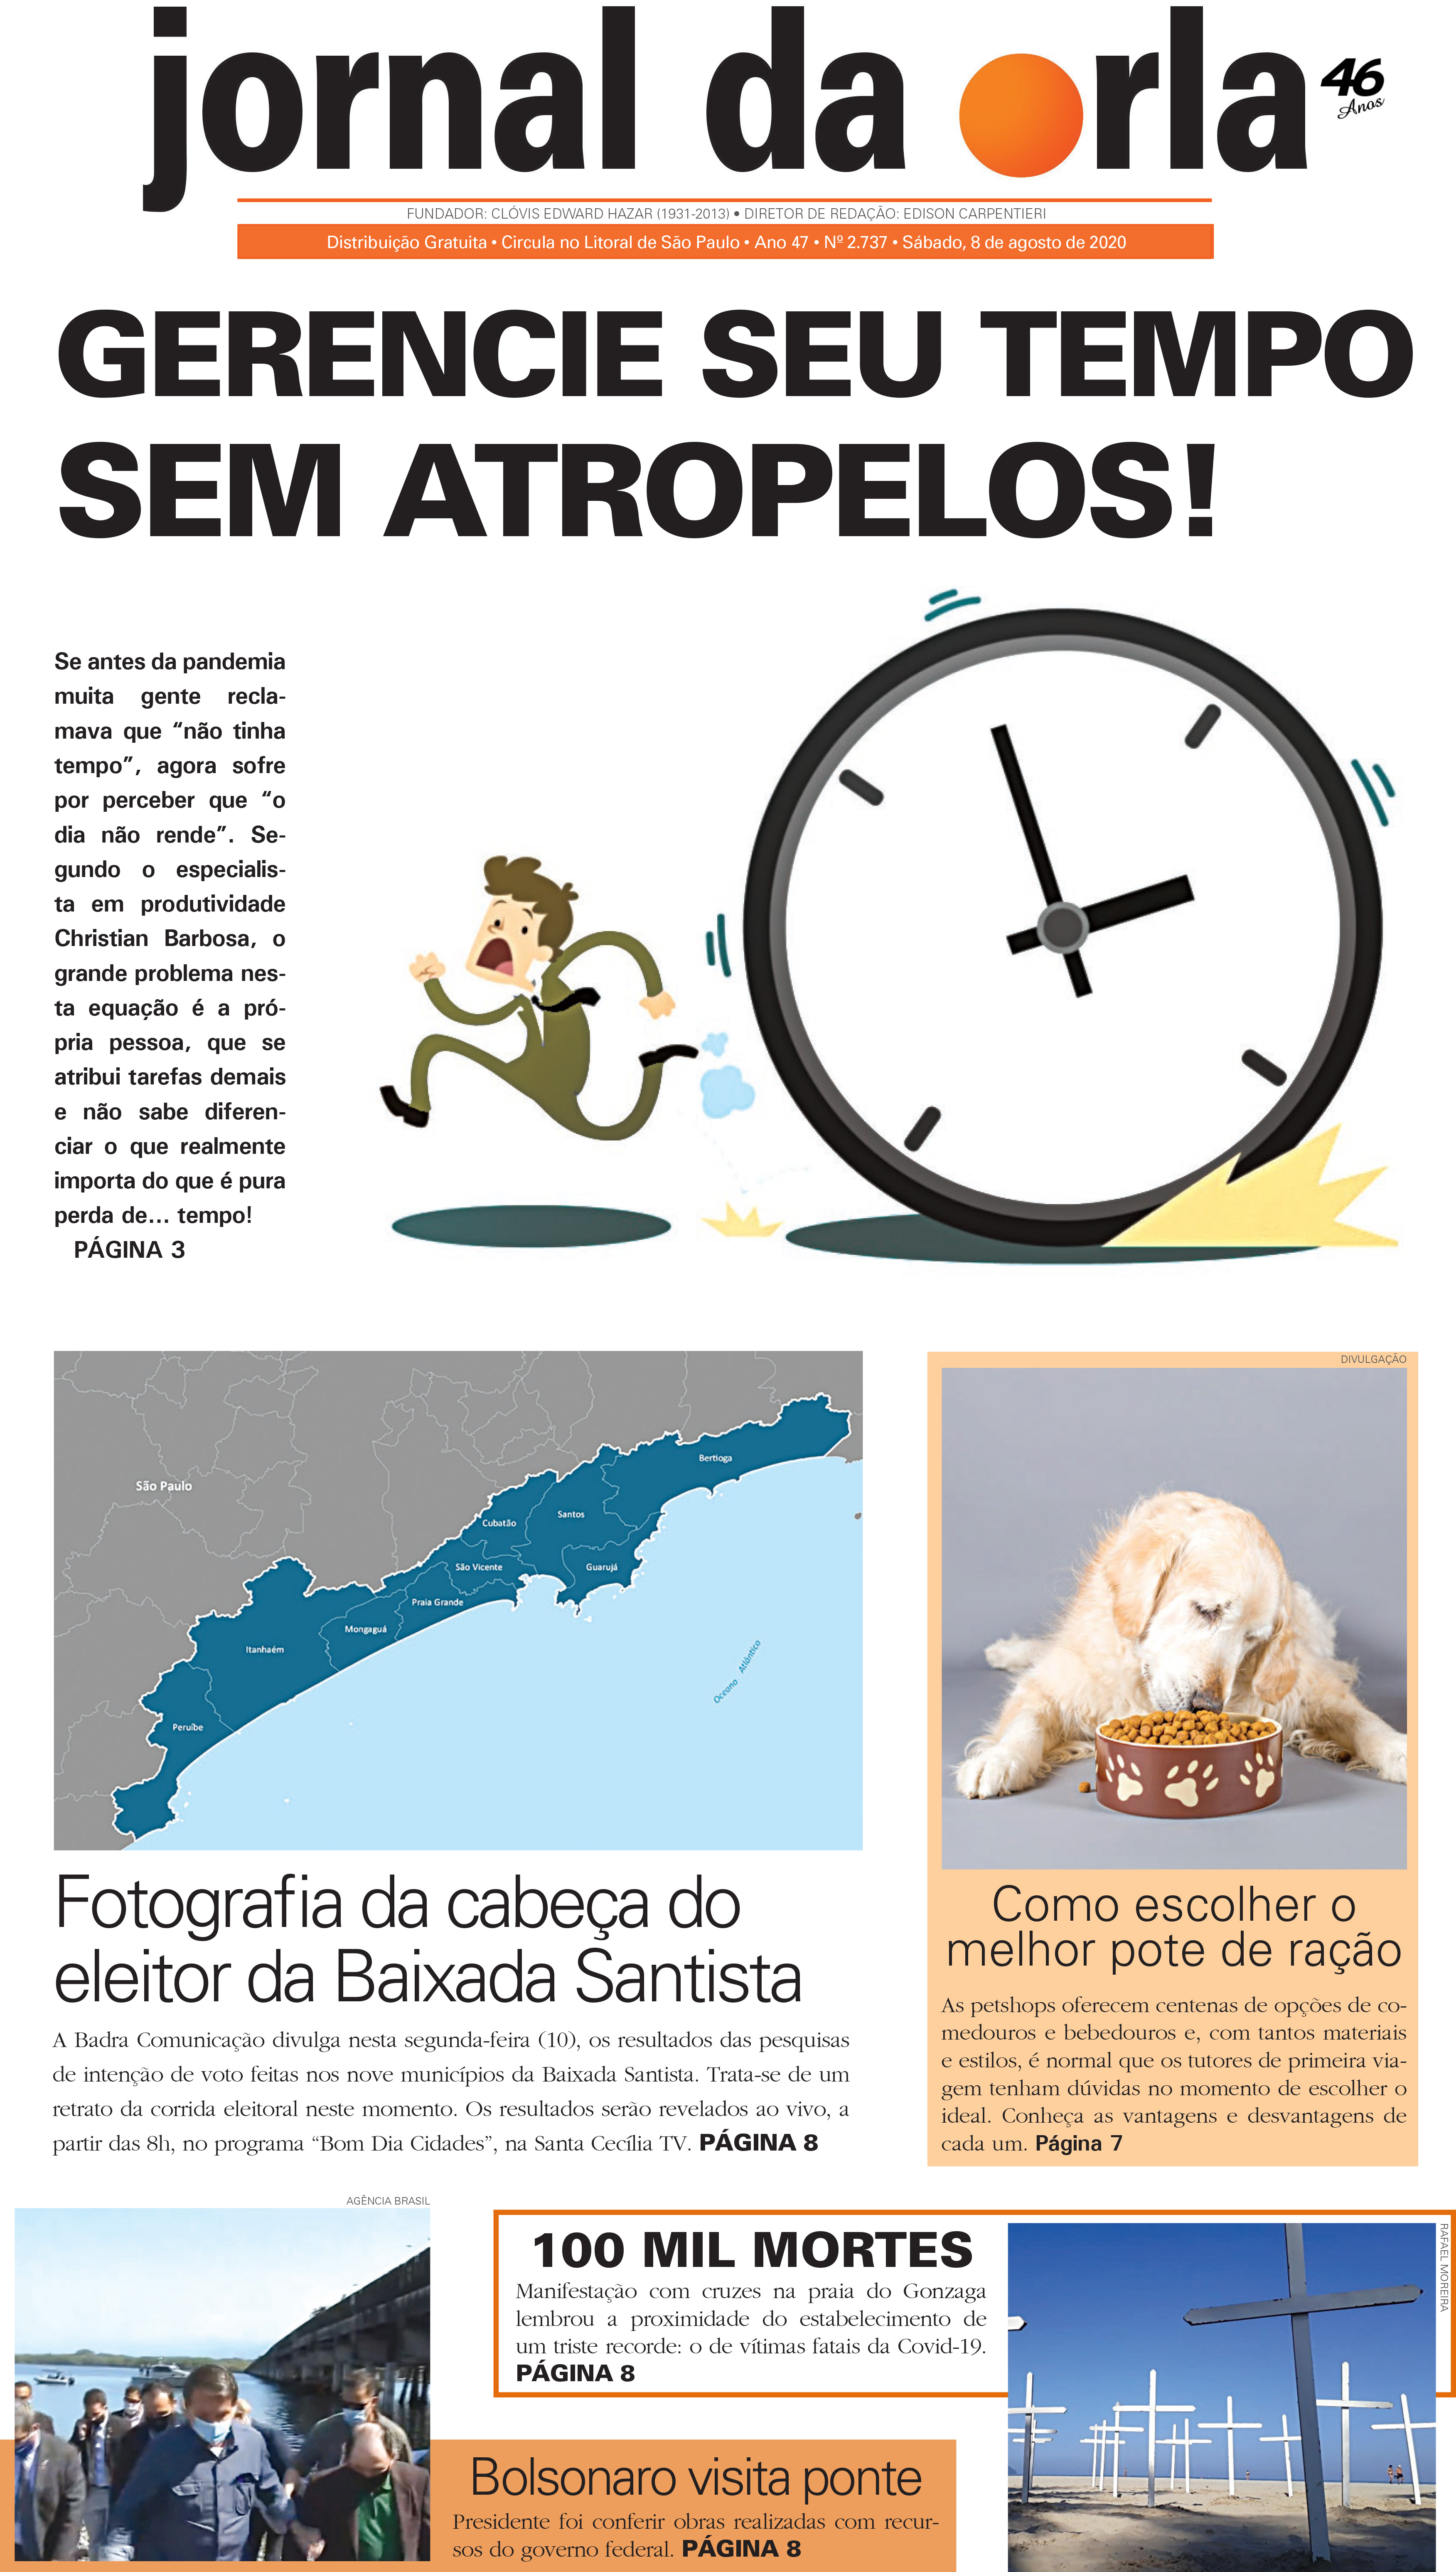 08/08/2020 | Jornal da Orla